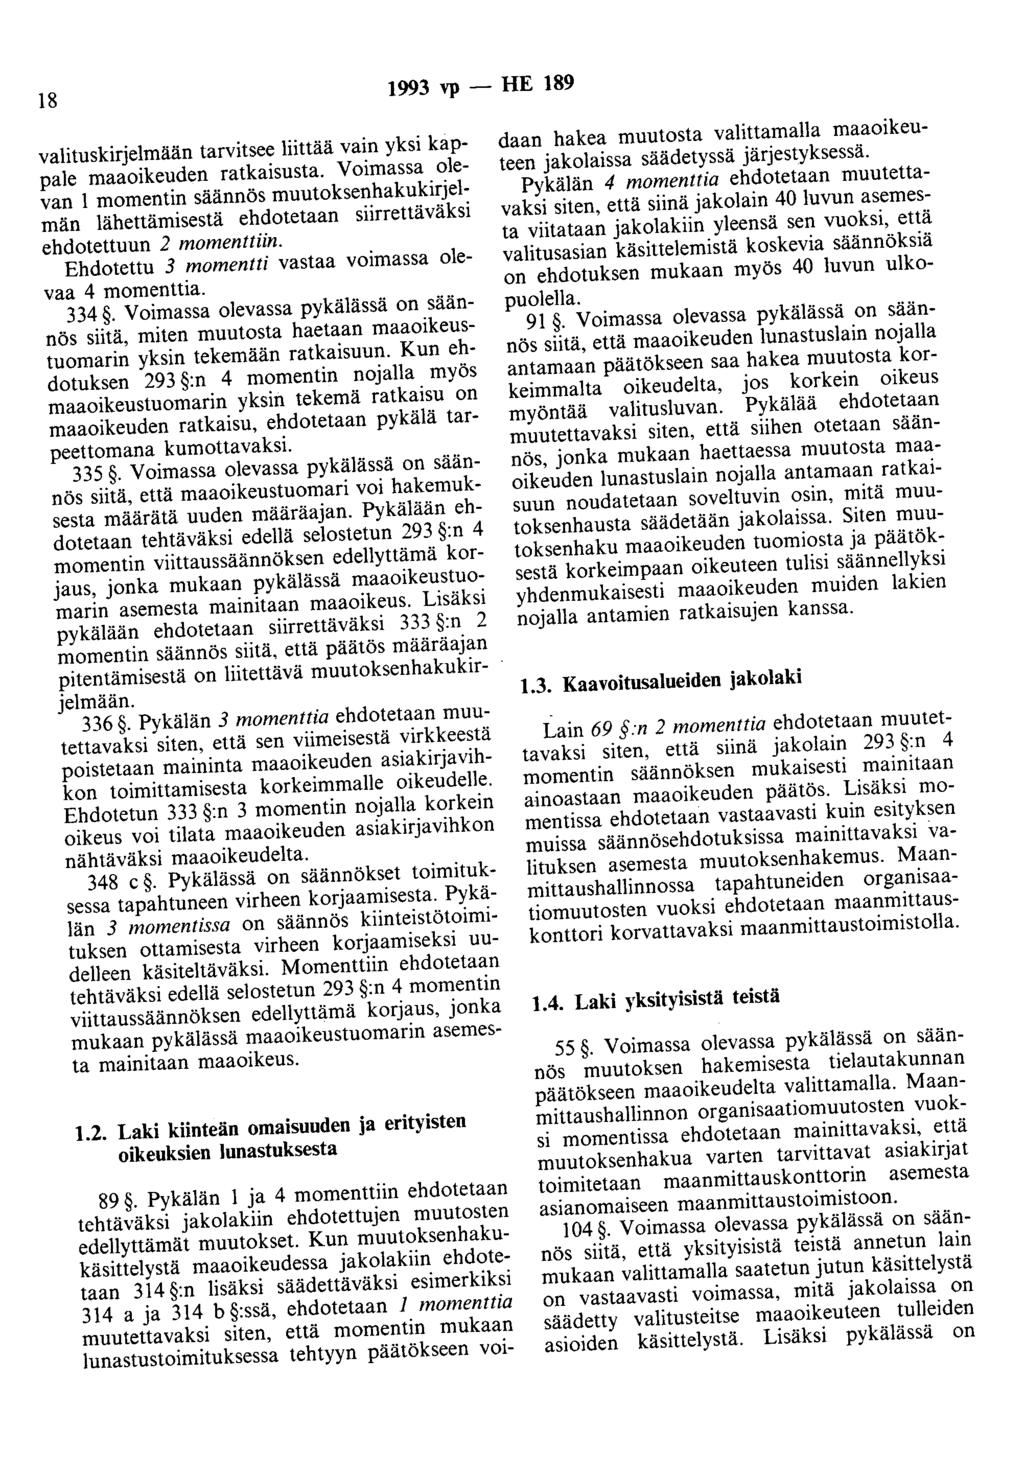 18 1993 vp - HE 189 valituskirjelmään tarvitsee liittää vain yksi kappale maaoikeuden ratkaisusta.